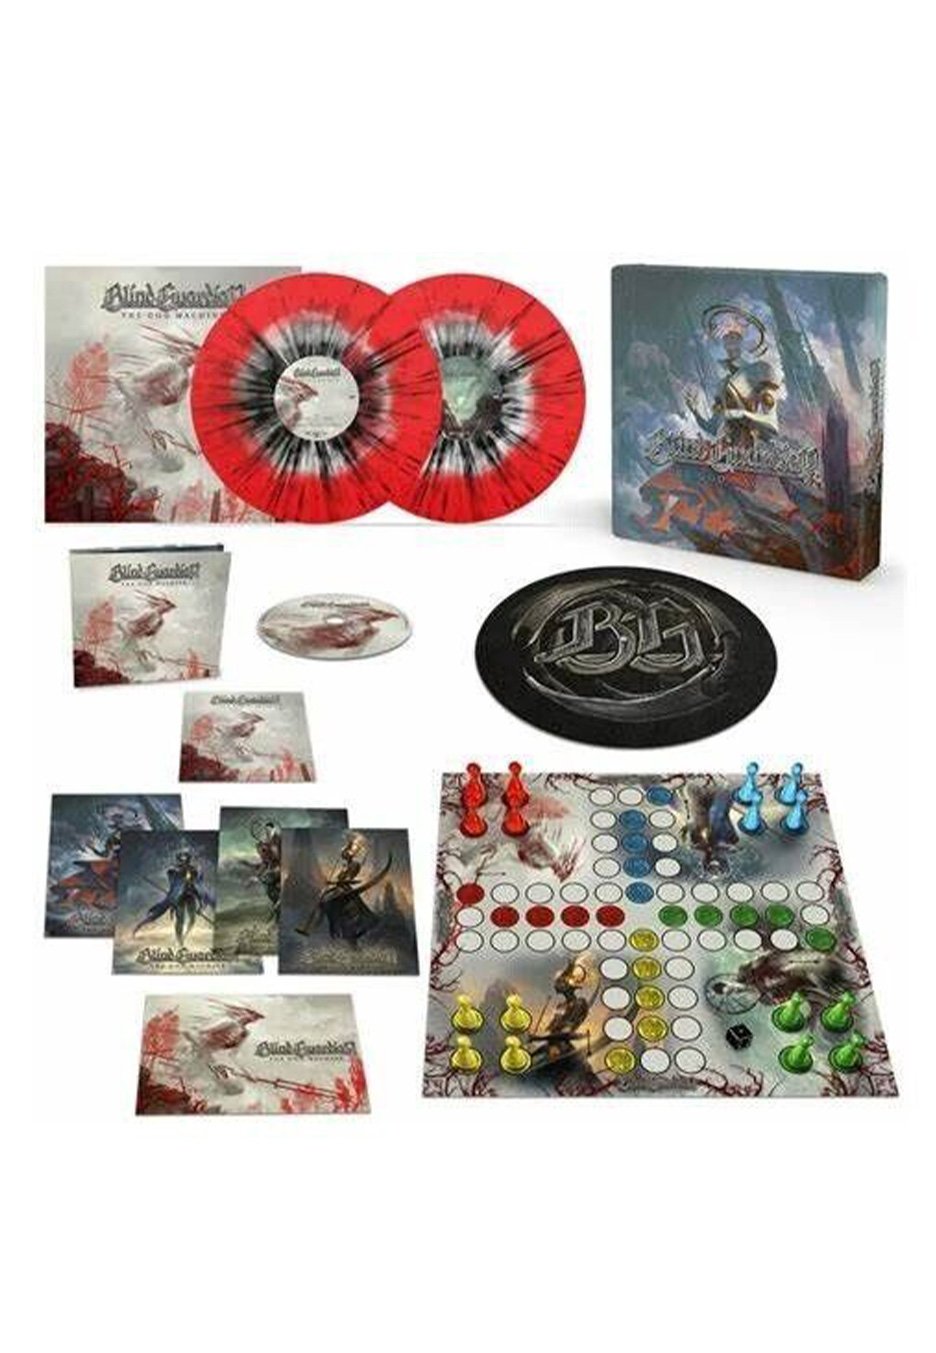 Blind Guardian - The God Machine Ltd. Crystal Clear w/ red Ink Spot & Black - Splattered 2 Vinyl + CD